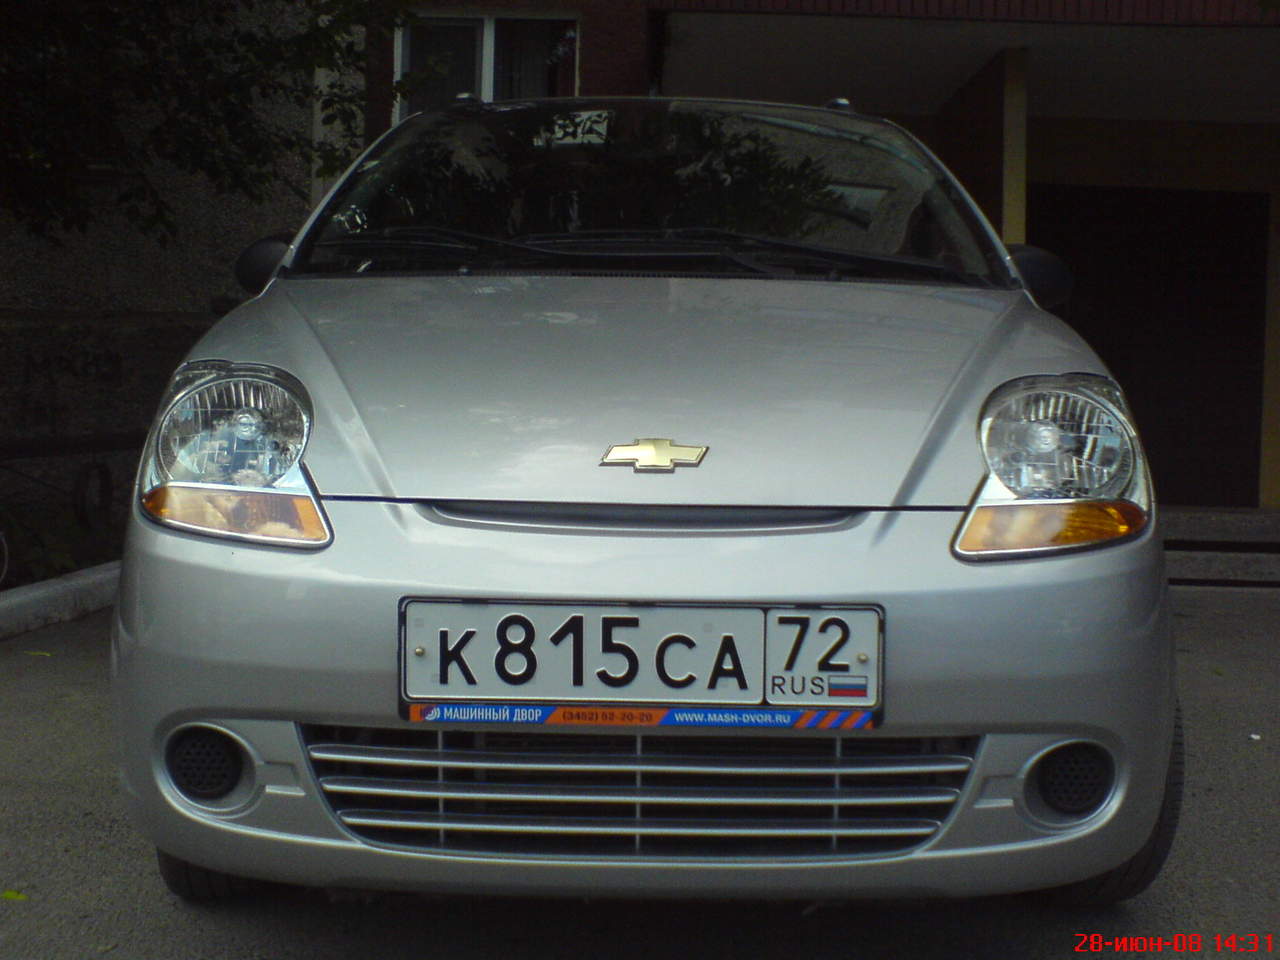 2006 Chevrolet Spark